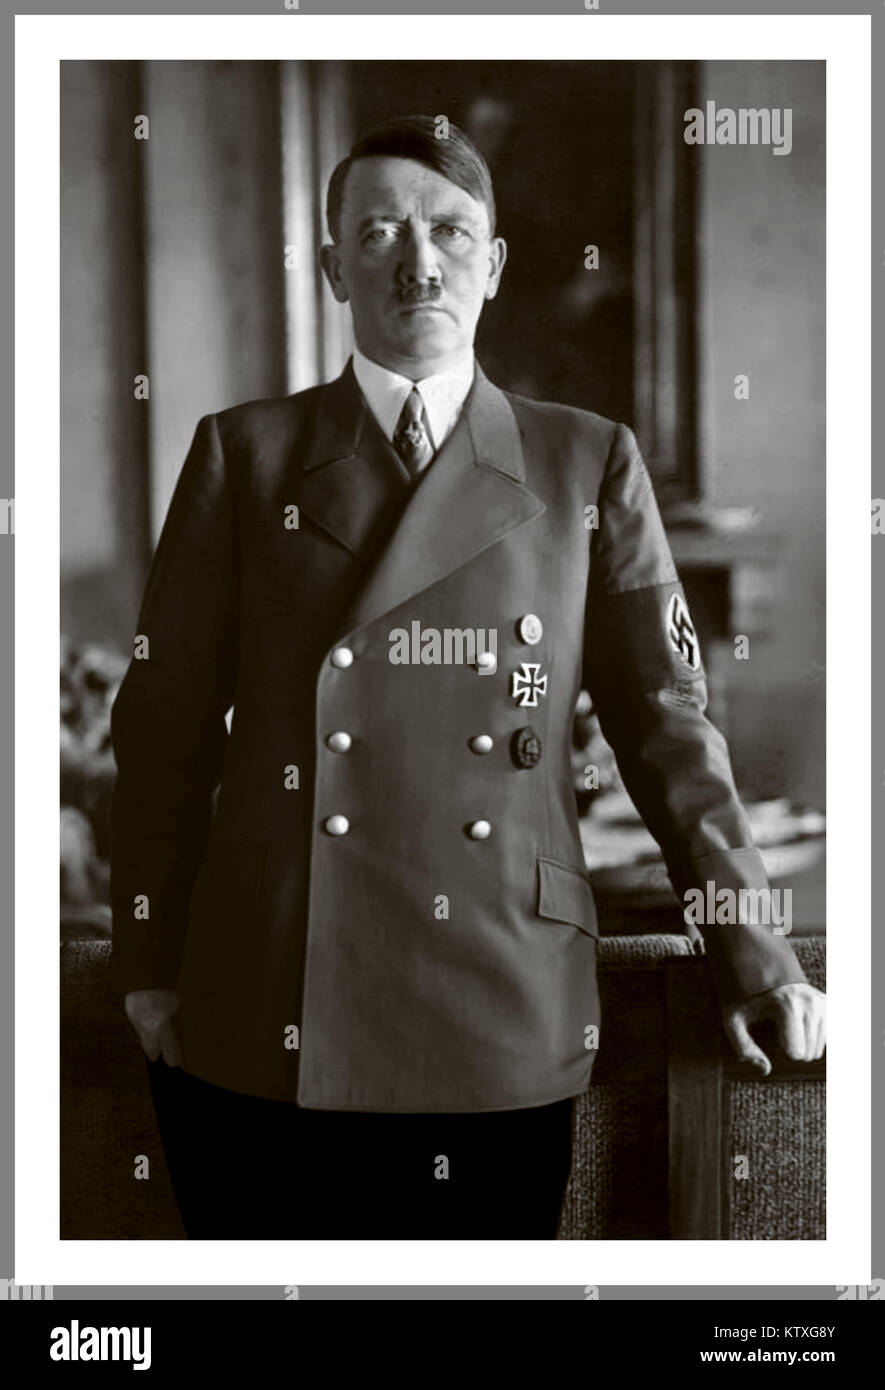 PORTRAIT ADOLF HITLER en uniforme officiel avec swastika brassard portrait de Fuhrer Adolf Hitler par Heinrich Hoffman (photographe personnel) dans le Reichstag Berlin Allemagne des années 1930 Banque D'Images